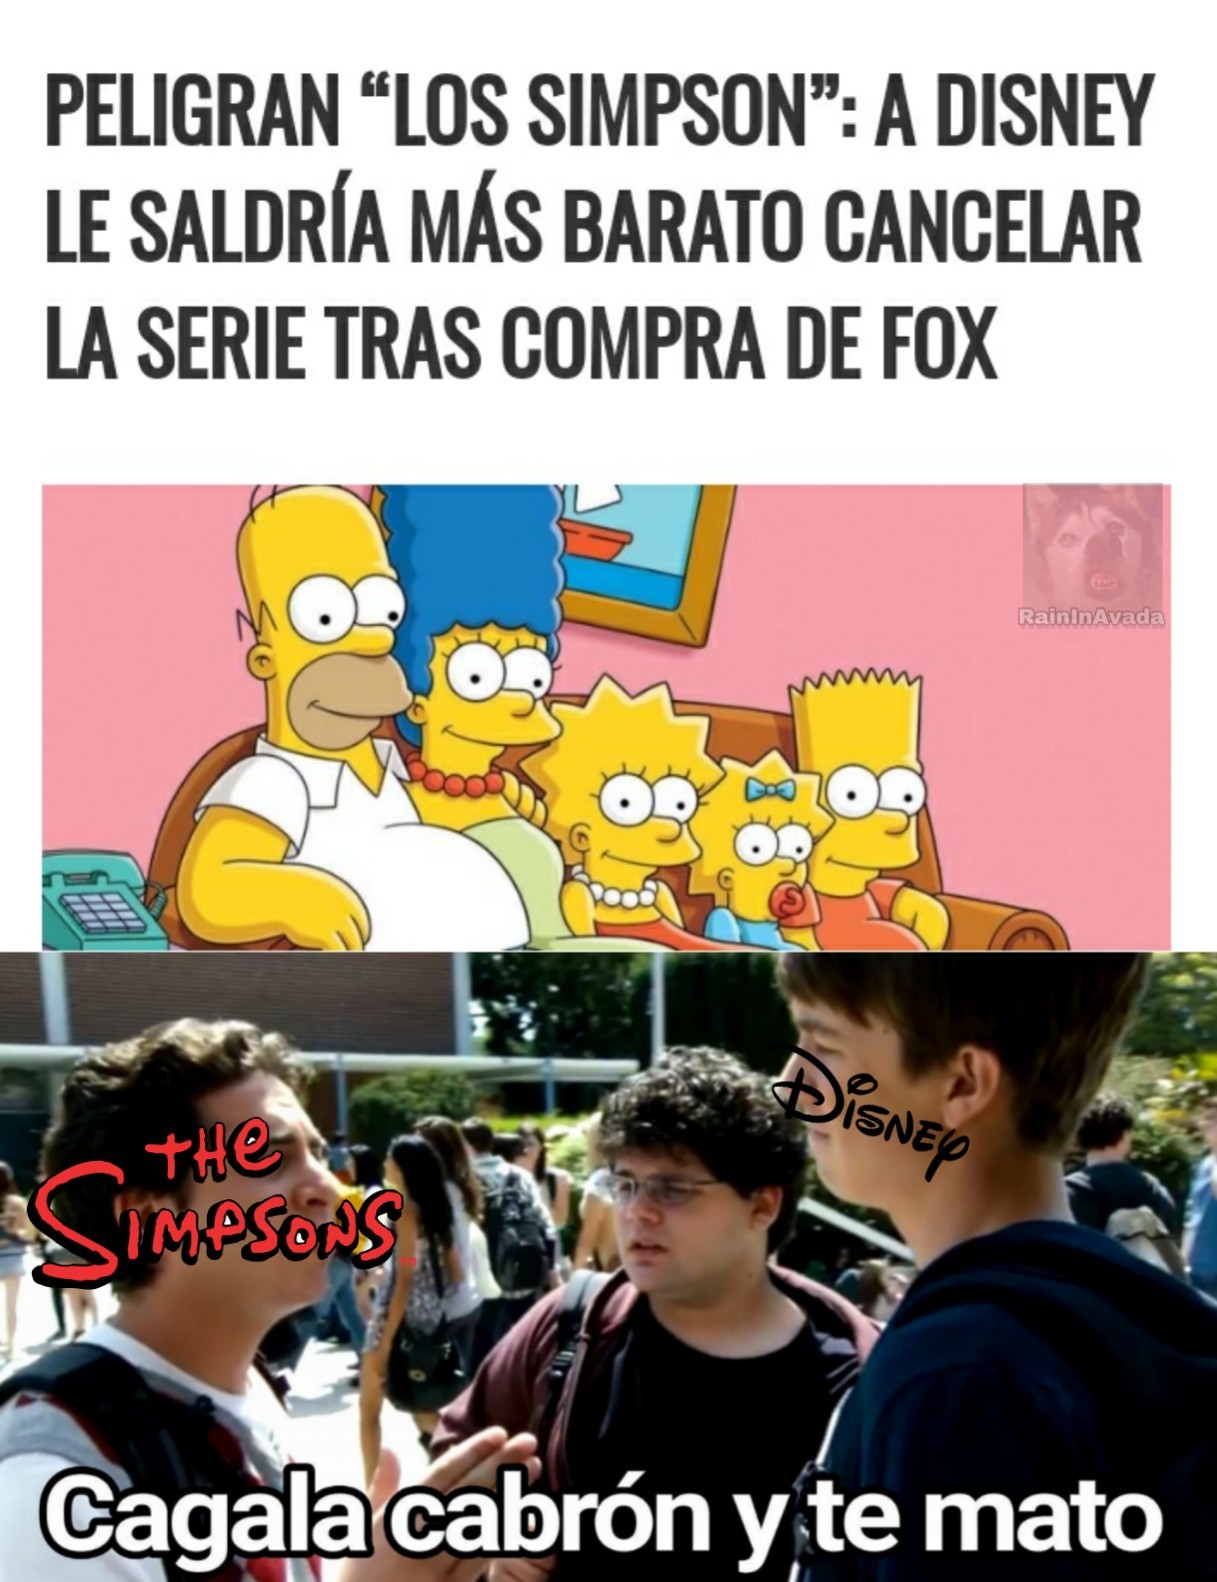 El título quiere comprar Fox y cancelar Los Simpsons - meme